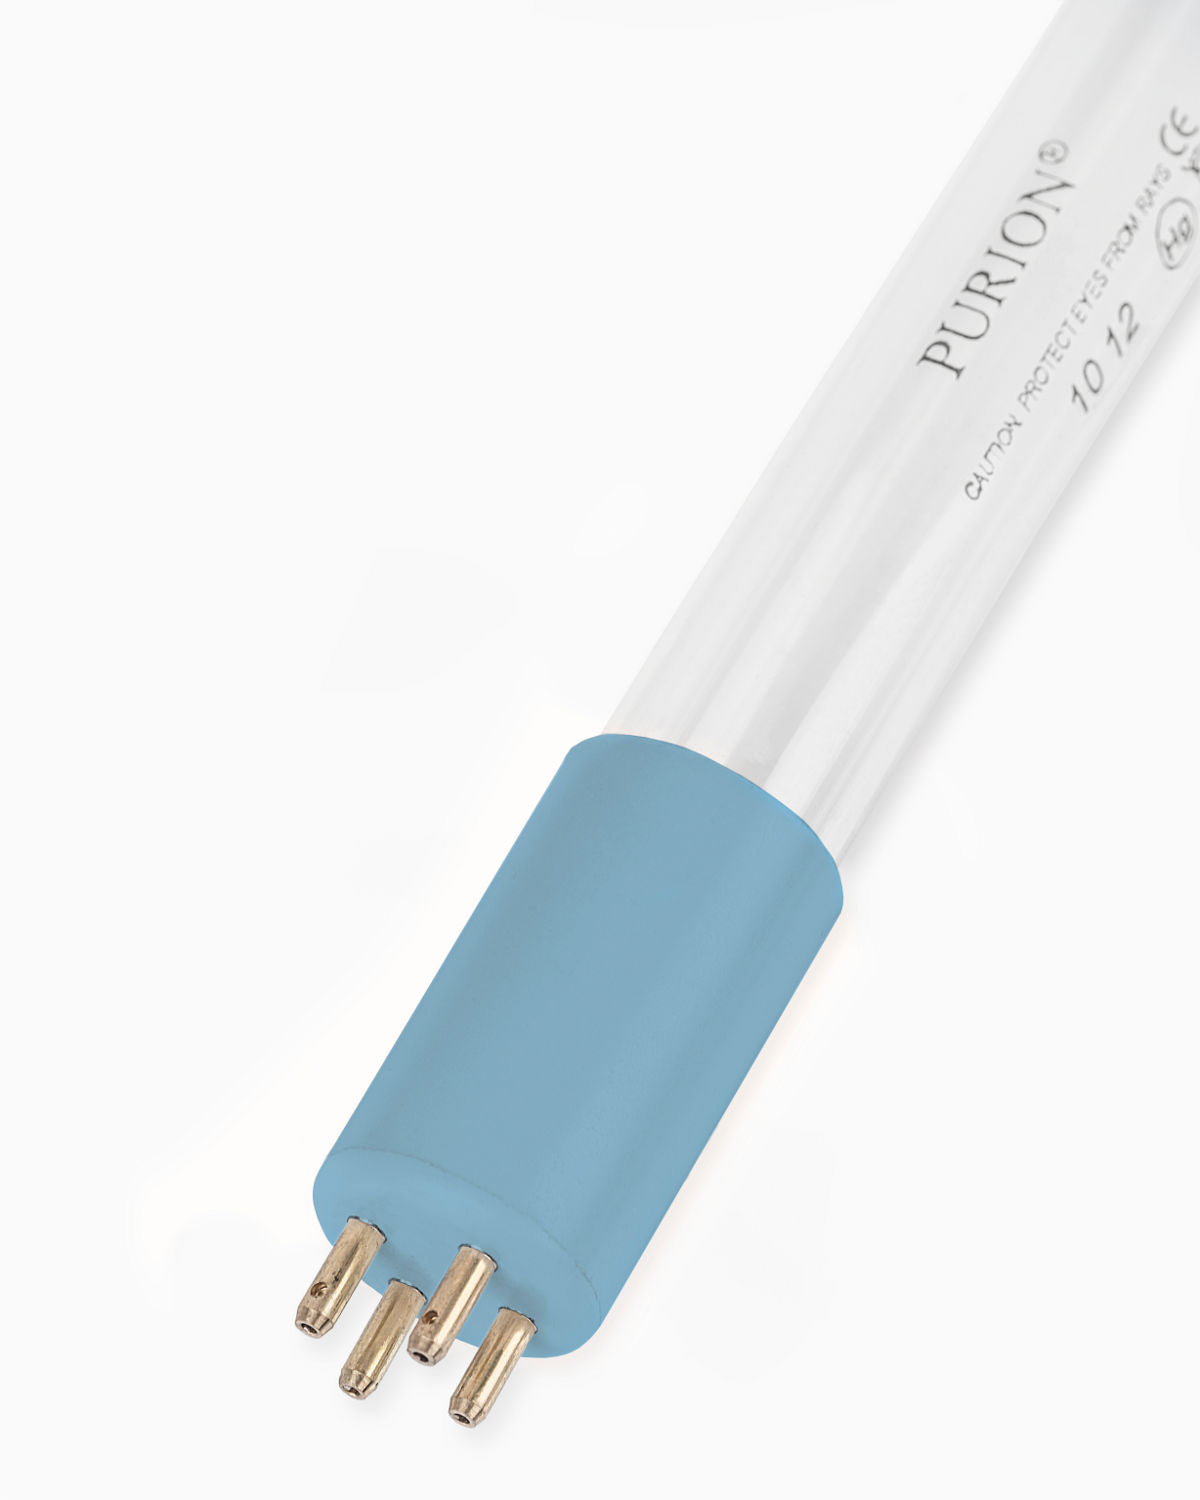 Eine PURION 500 110 - 240 V AC OPD-Blaulichtröhre auf weißem Hintergrund, die im Trinkwasseraufbereitungsprozess für Desinfektionsanlagen verwendet wird.